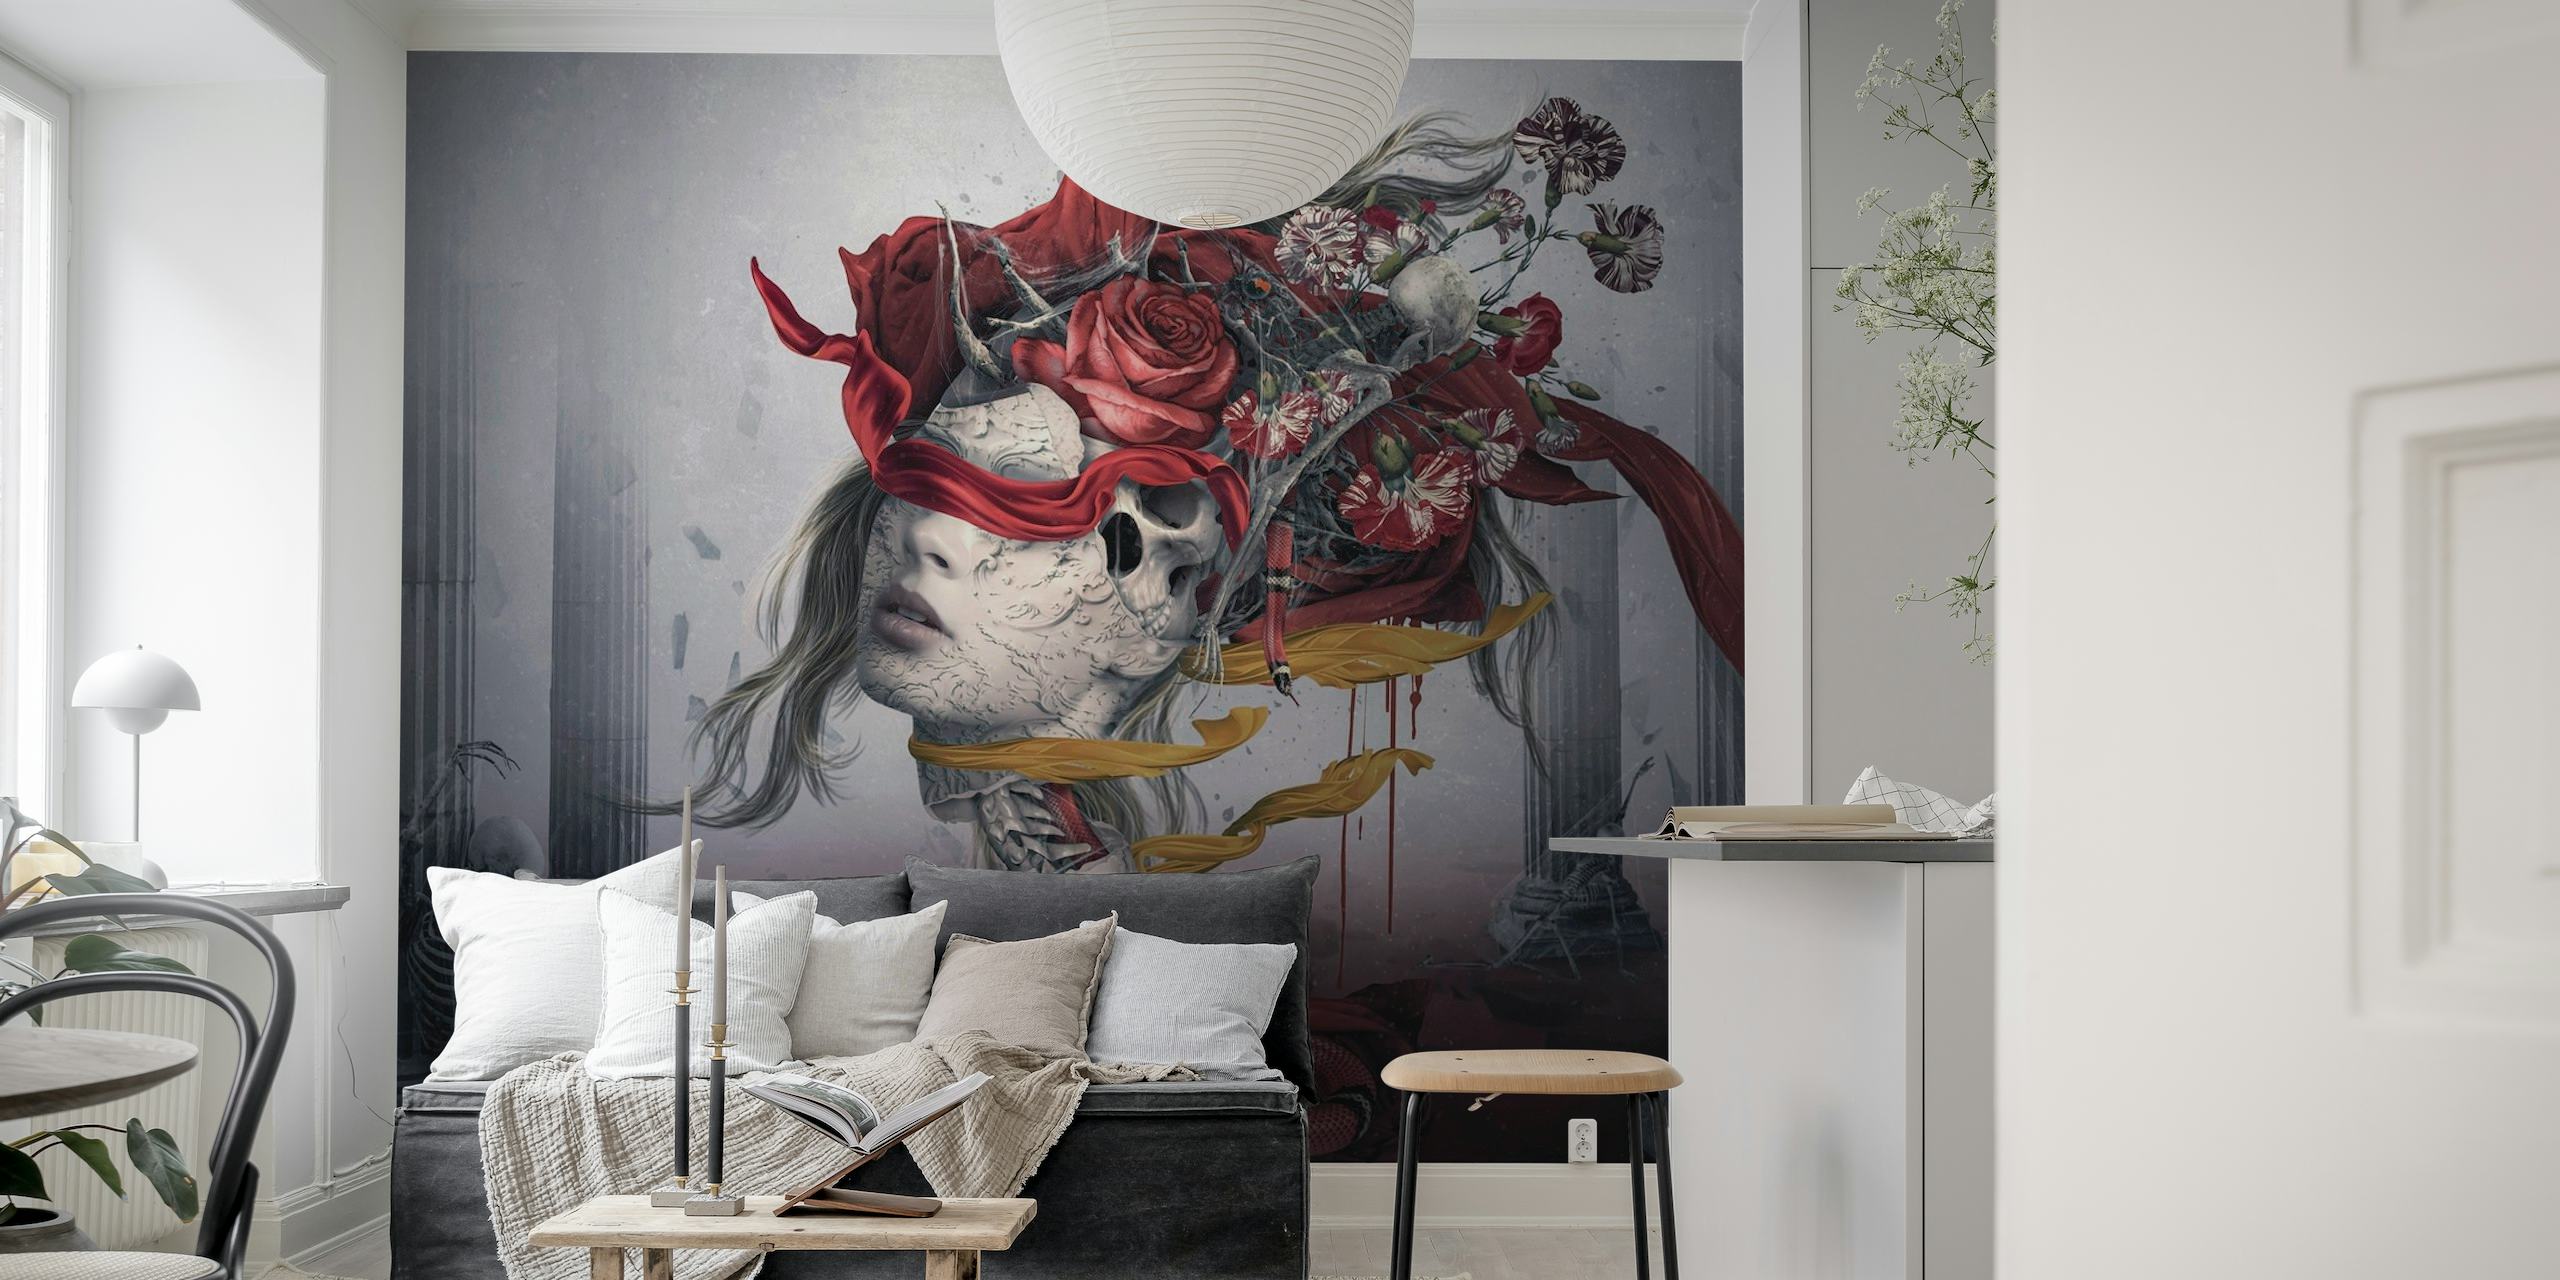 Representação mural surreal de uma figura com rosas vermelhas e detalhes esfumaçados em um fundo suave